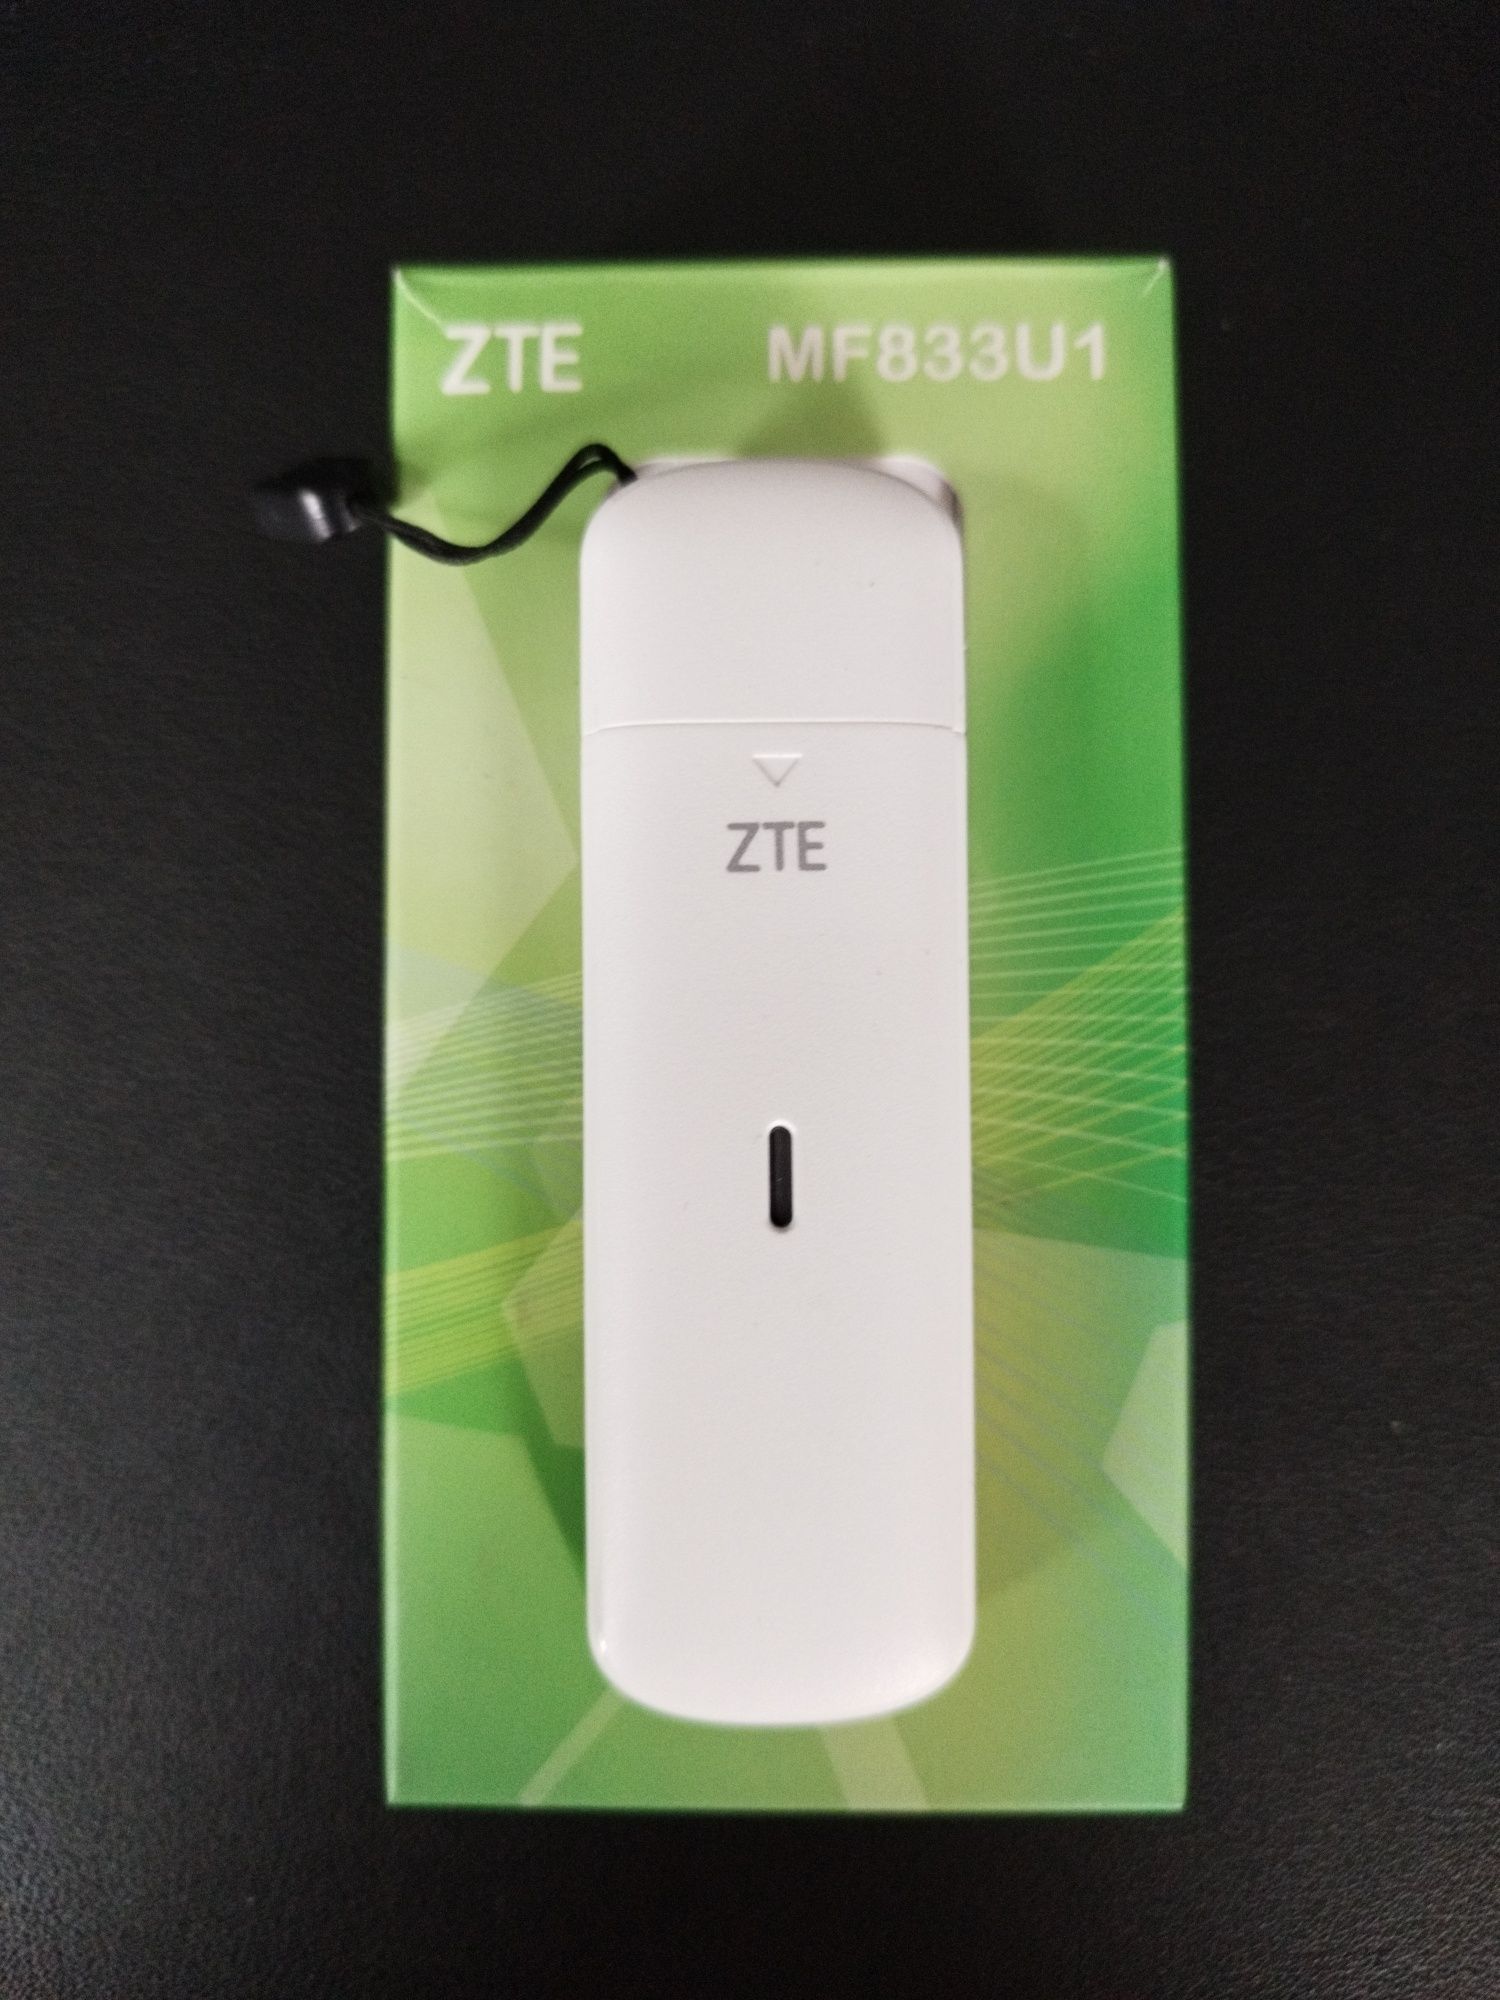 Modem ZTE MF833U1 4G LTE USB nowy